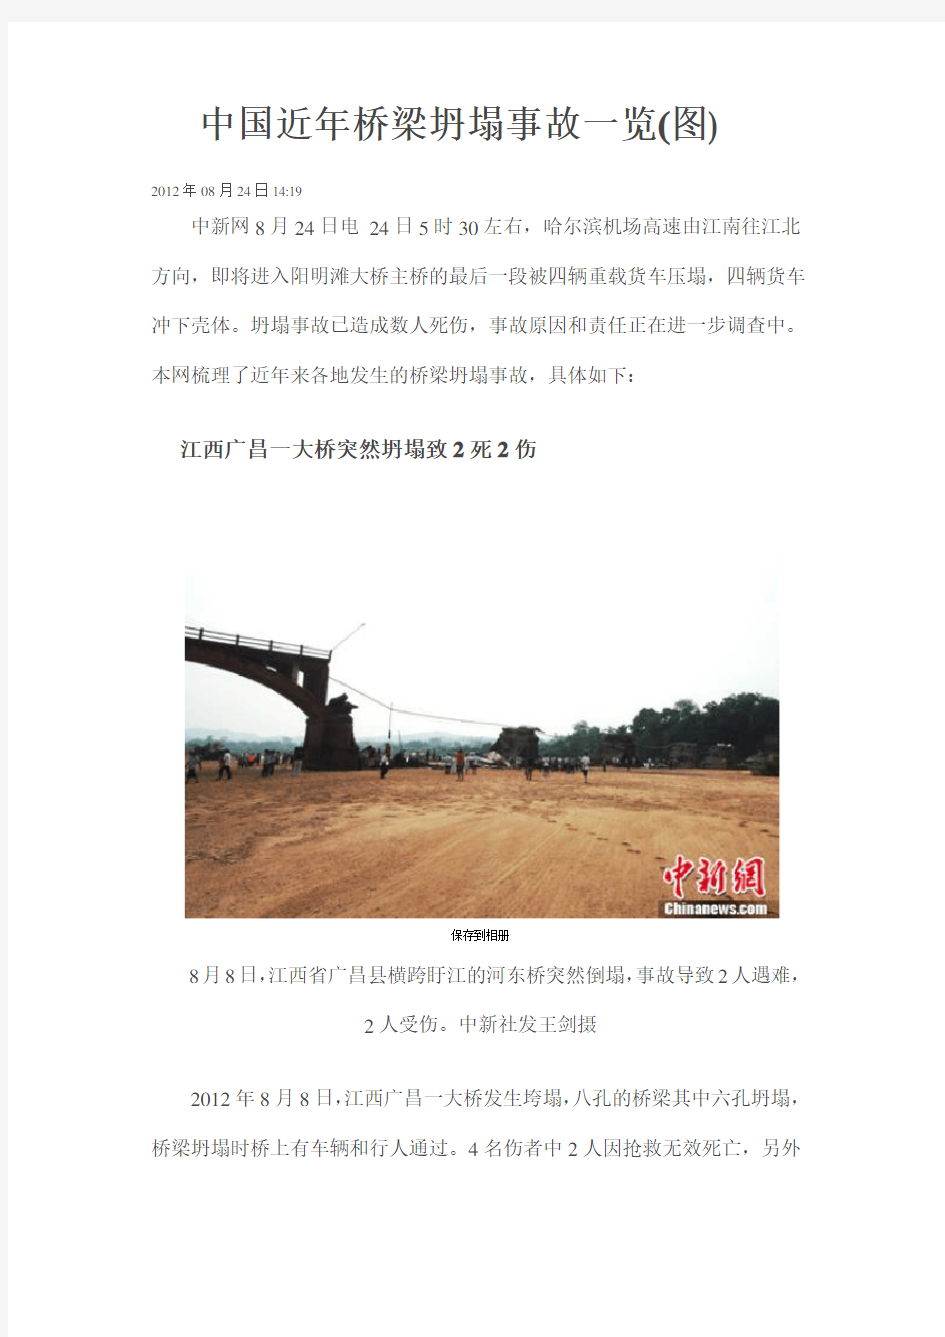 中国近年桥梁坍塌事故一览(图)